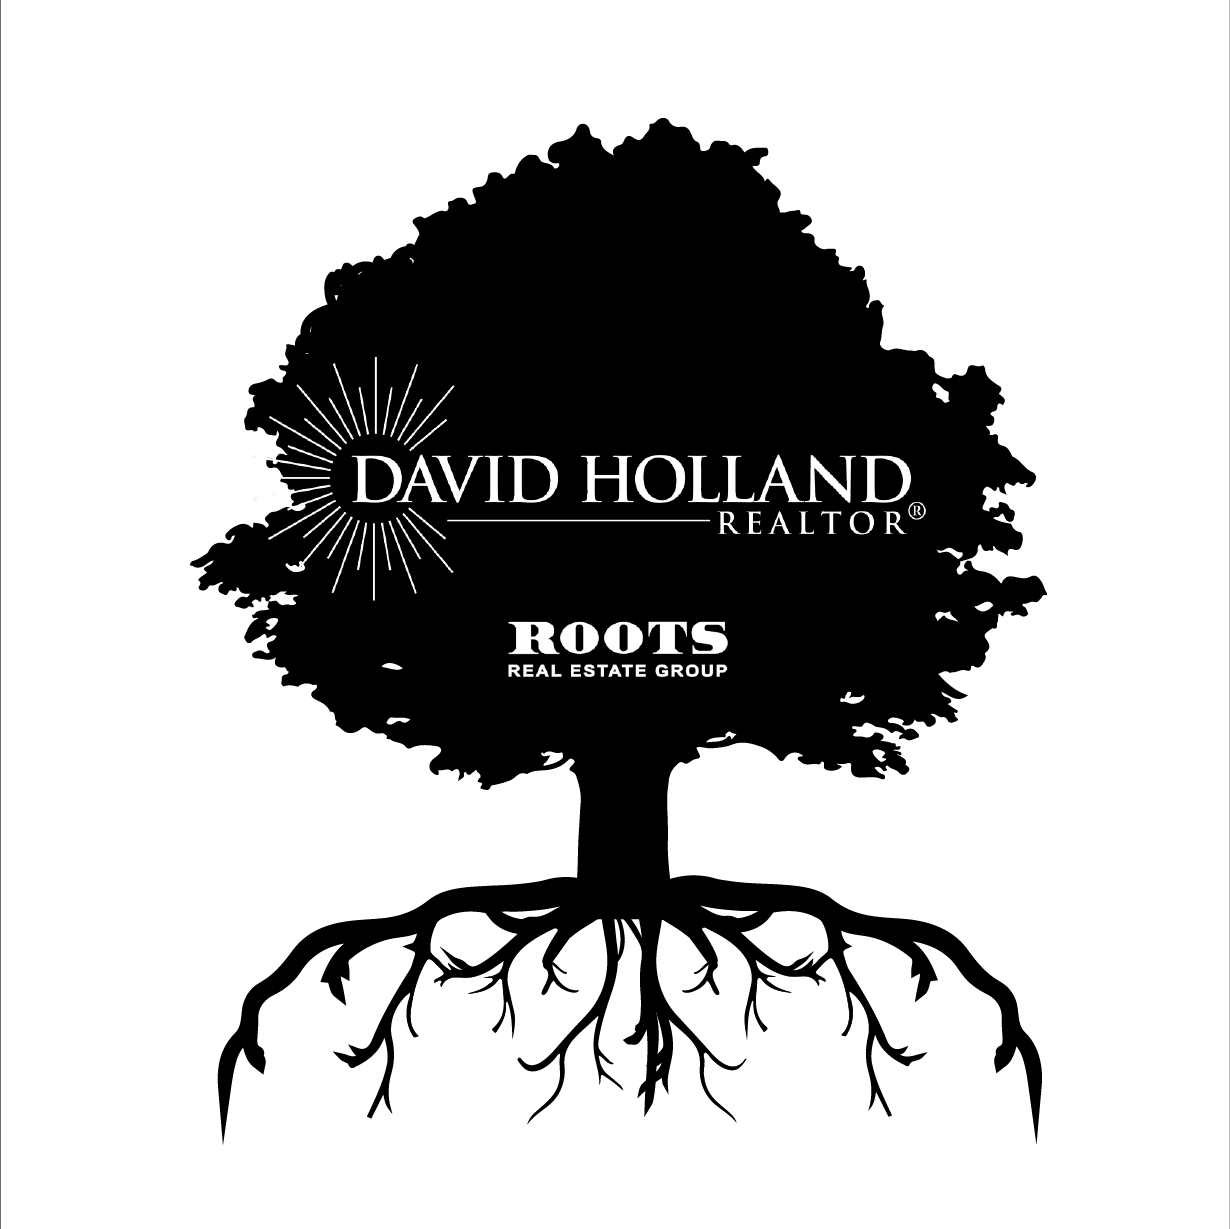 David Holland Realtors